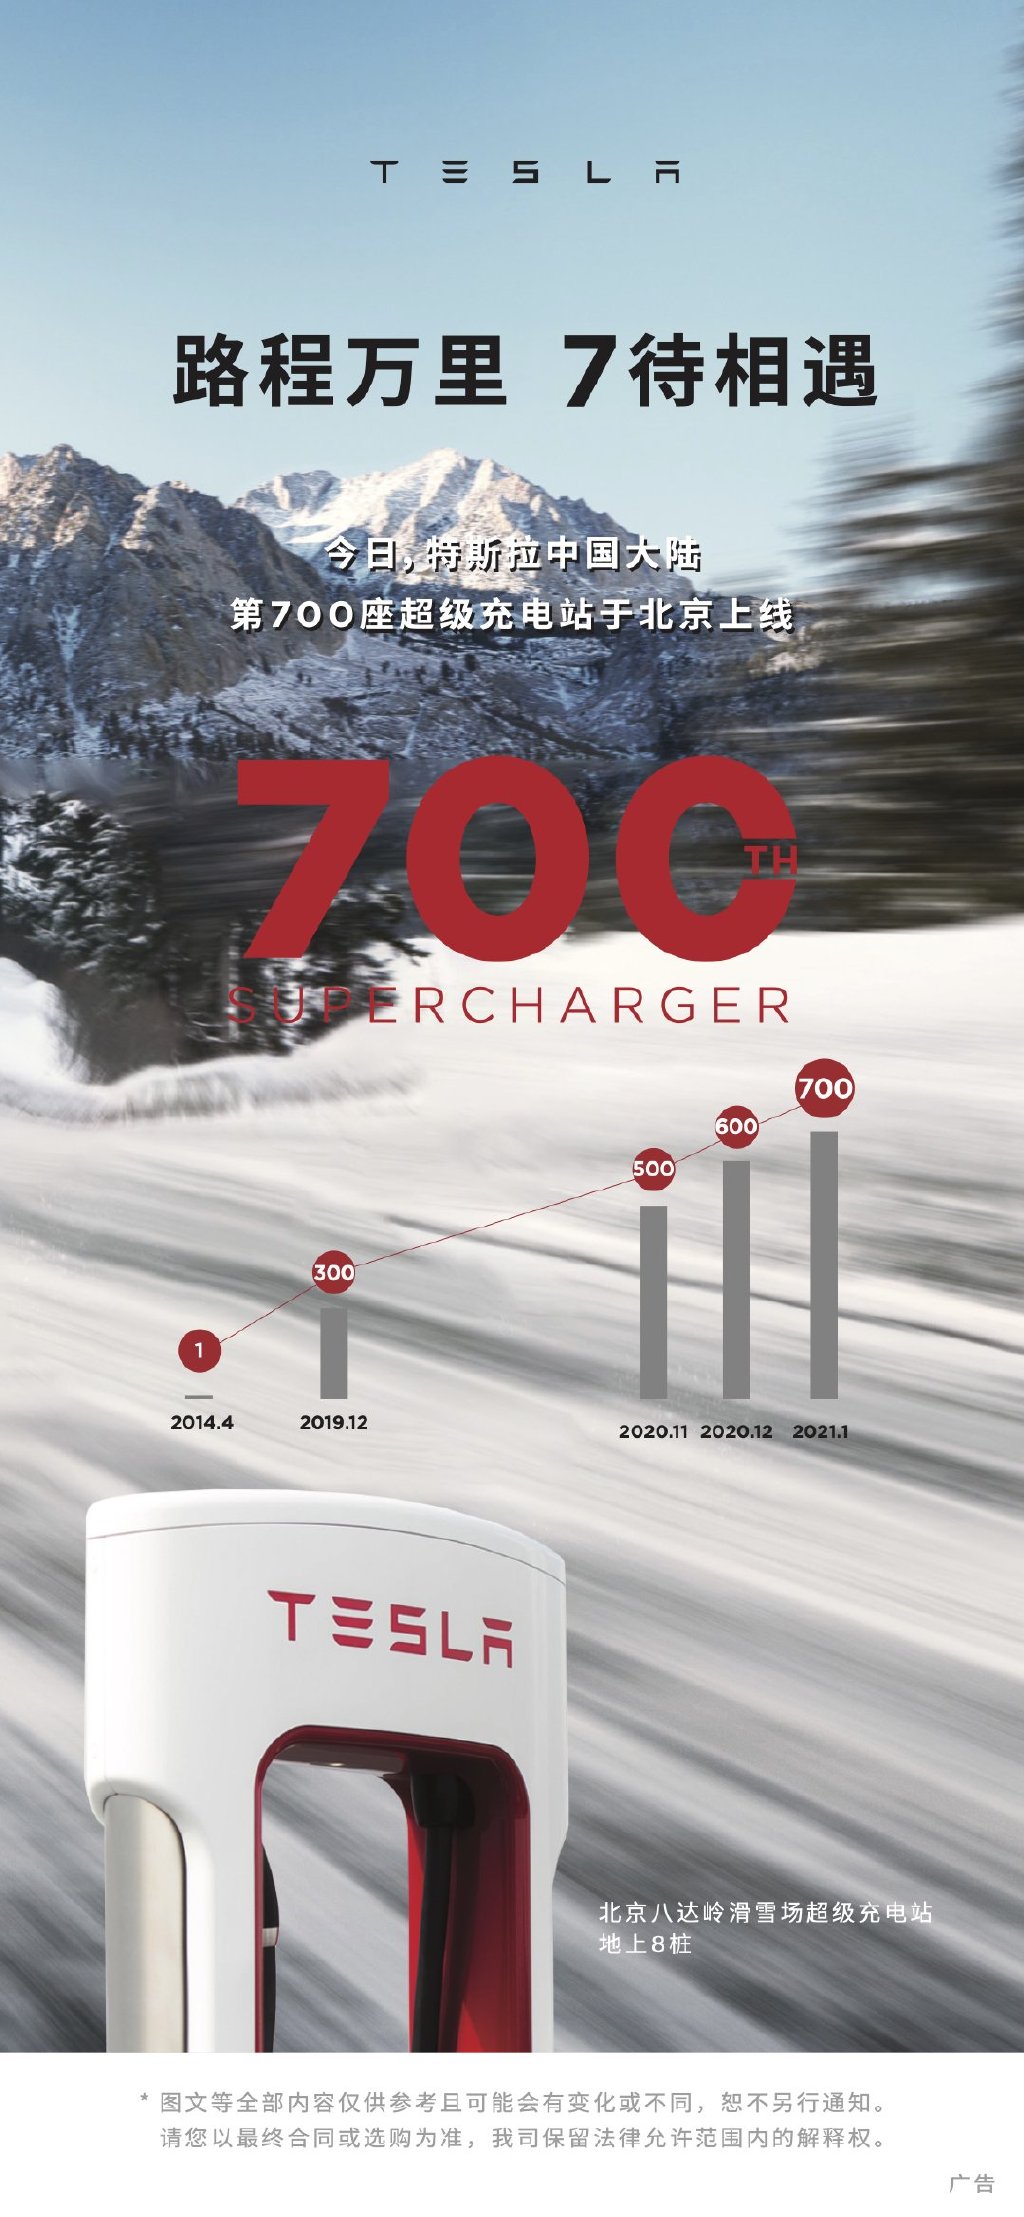 Tesla-china-supercharger-station-Beijing-ski-resort